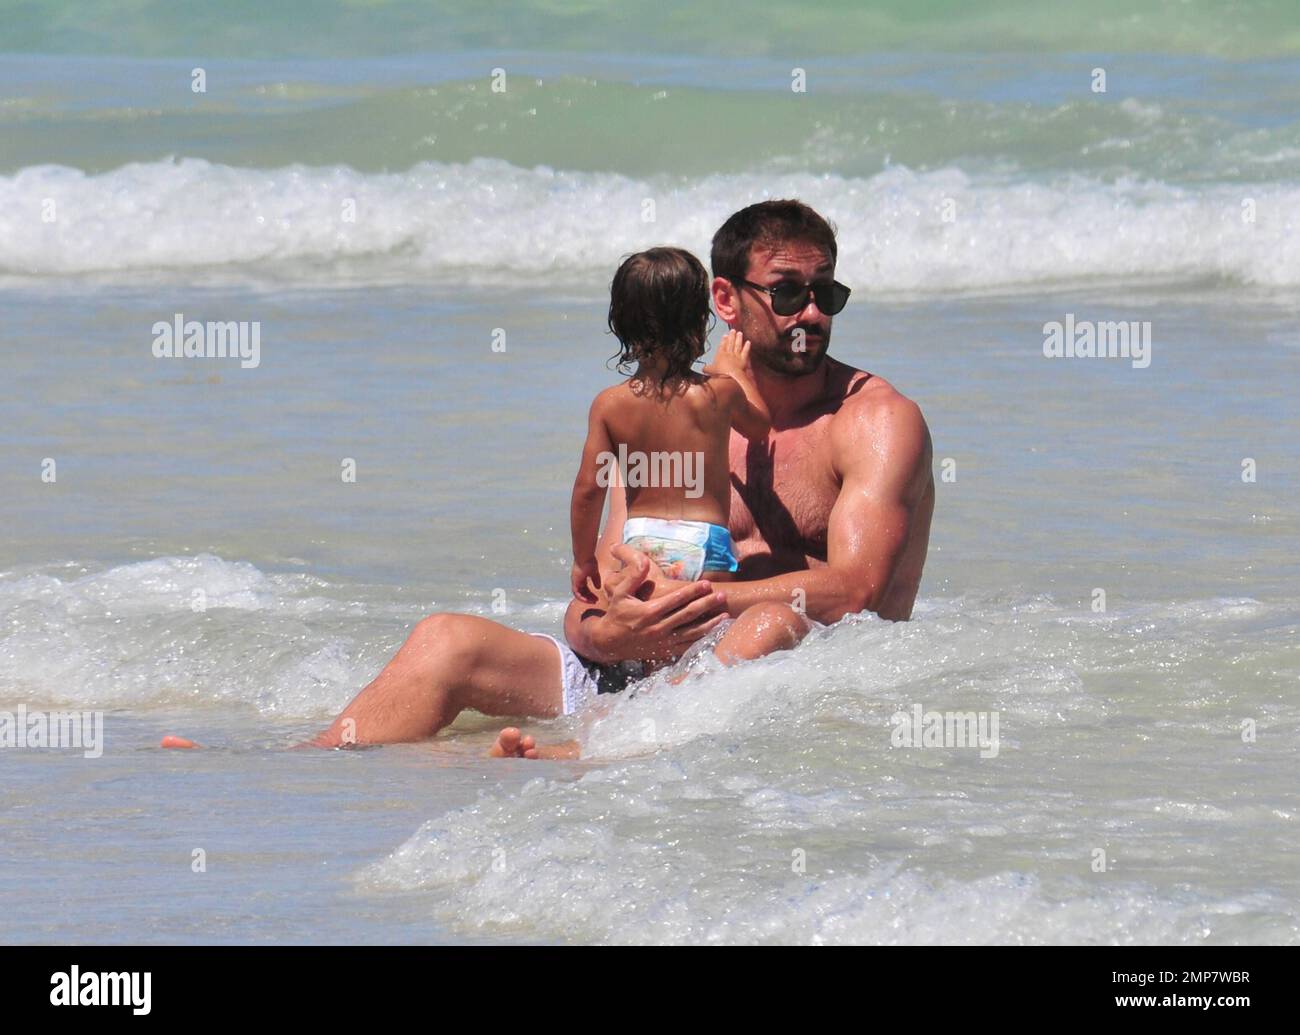 Adriana Lima, la figlia Valentina e il marito Marko Jaric si divertono nel surf a Miami Beach, Florida, 31st luglio 2011. Foto Stock